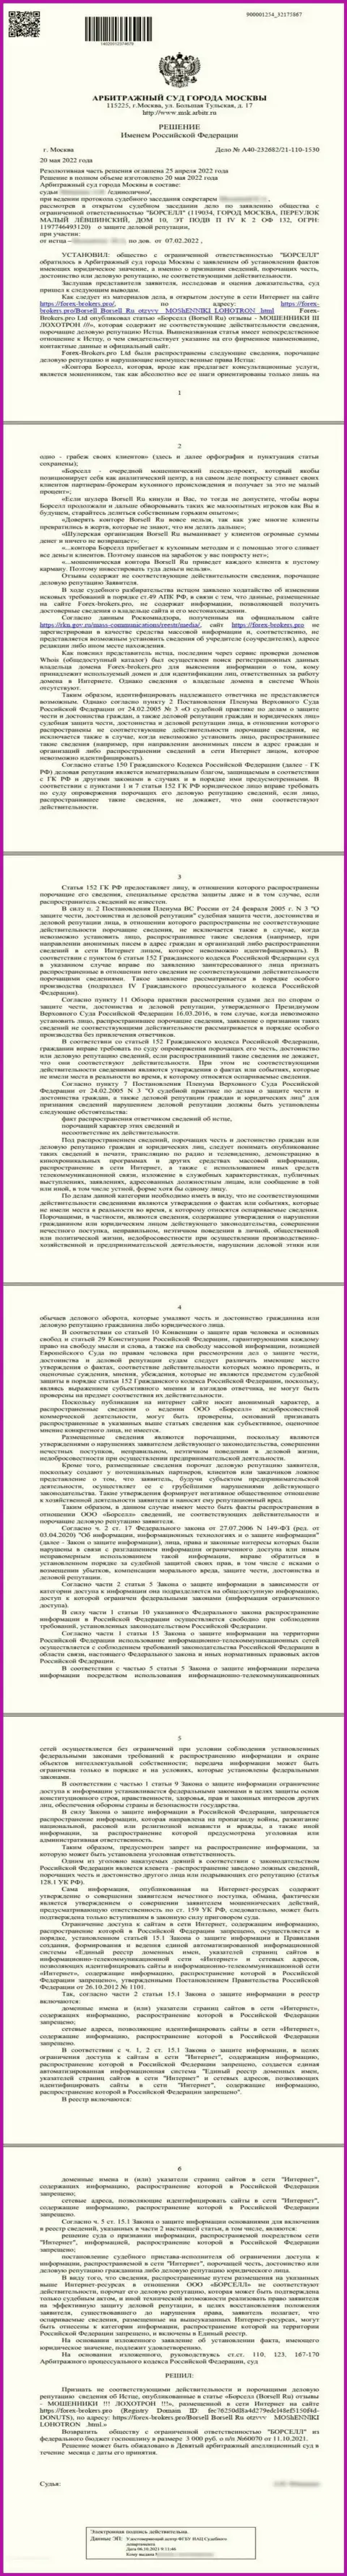 Скриншот решения арбитражного суда по заявлению аналитического центра Borsell Ru